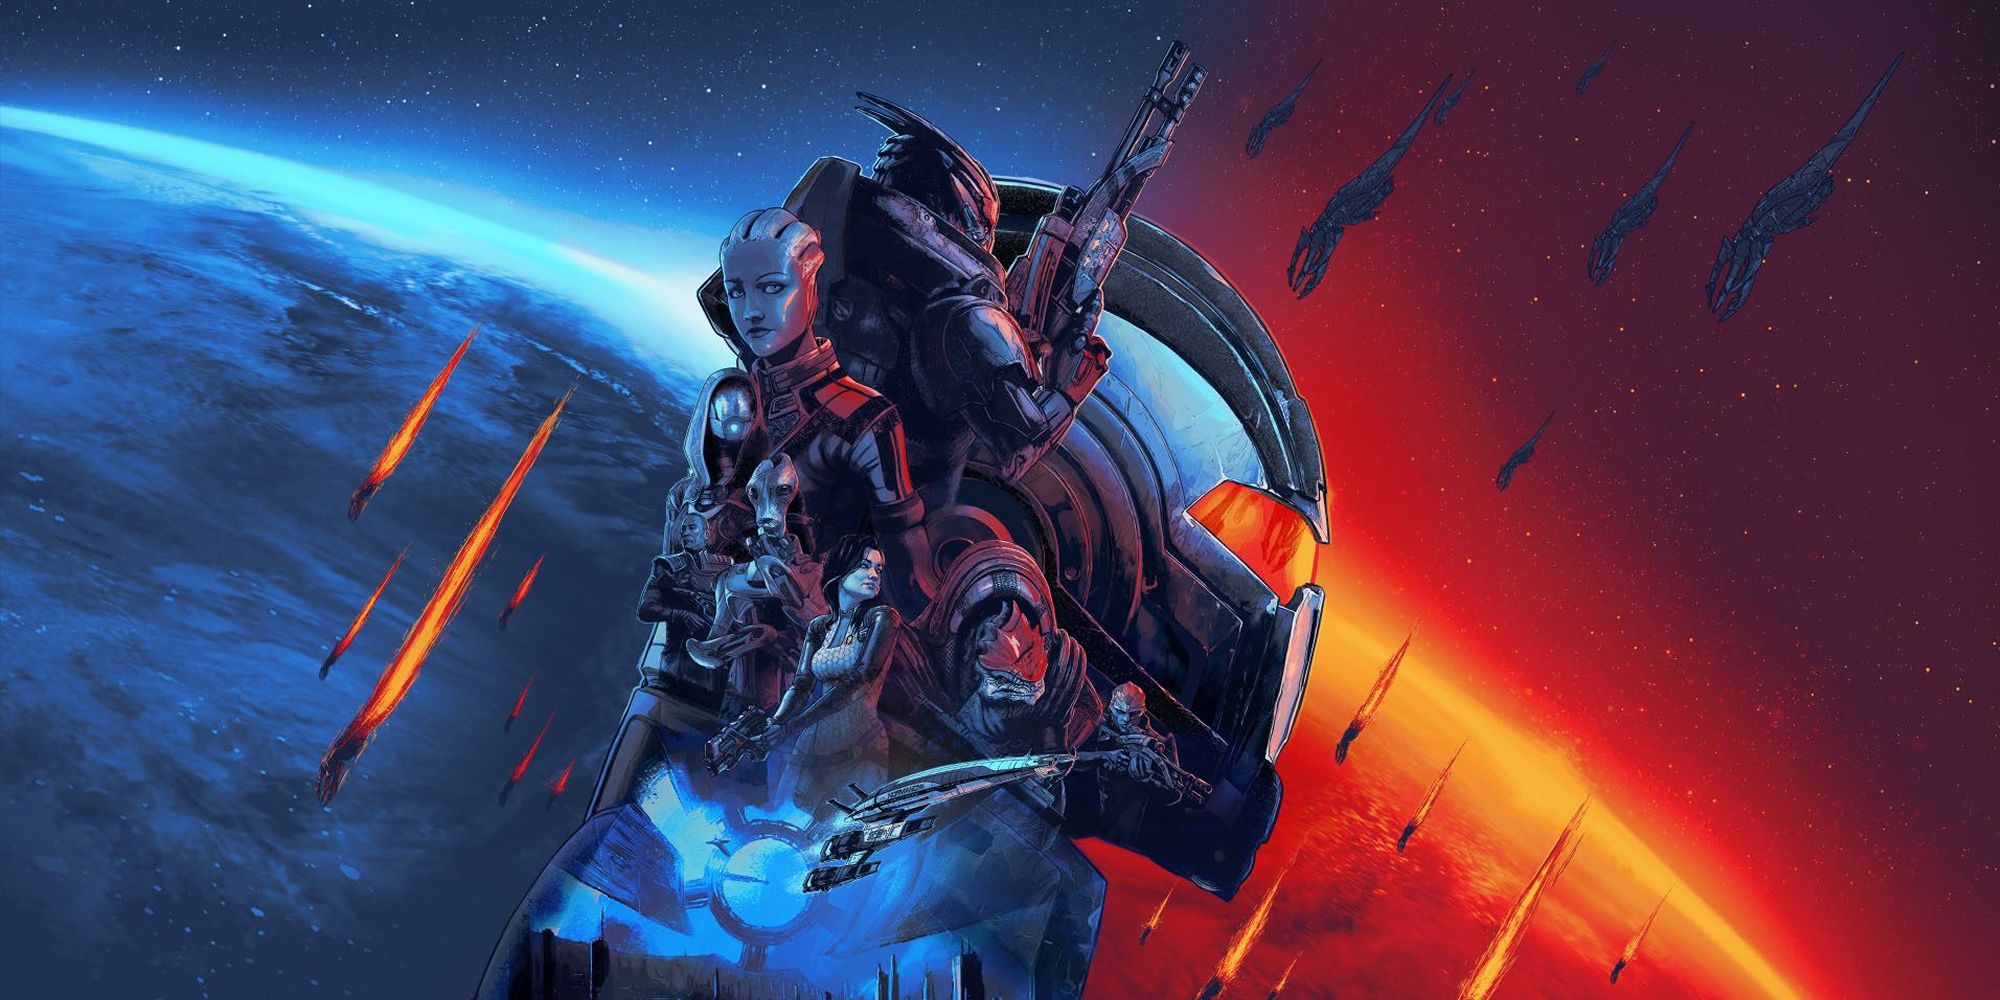 Mass Effect Legendary Edition Cover Art